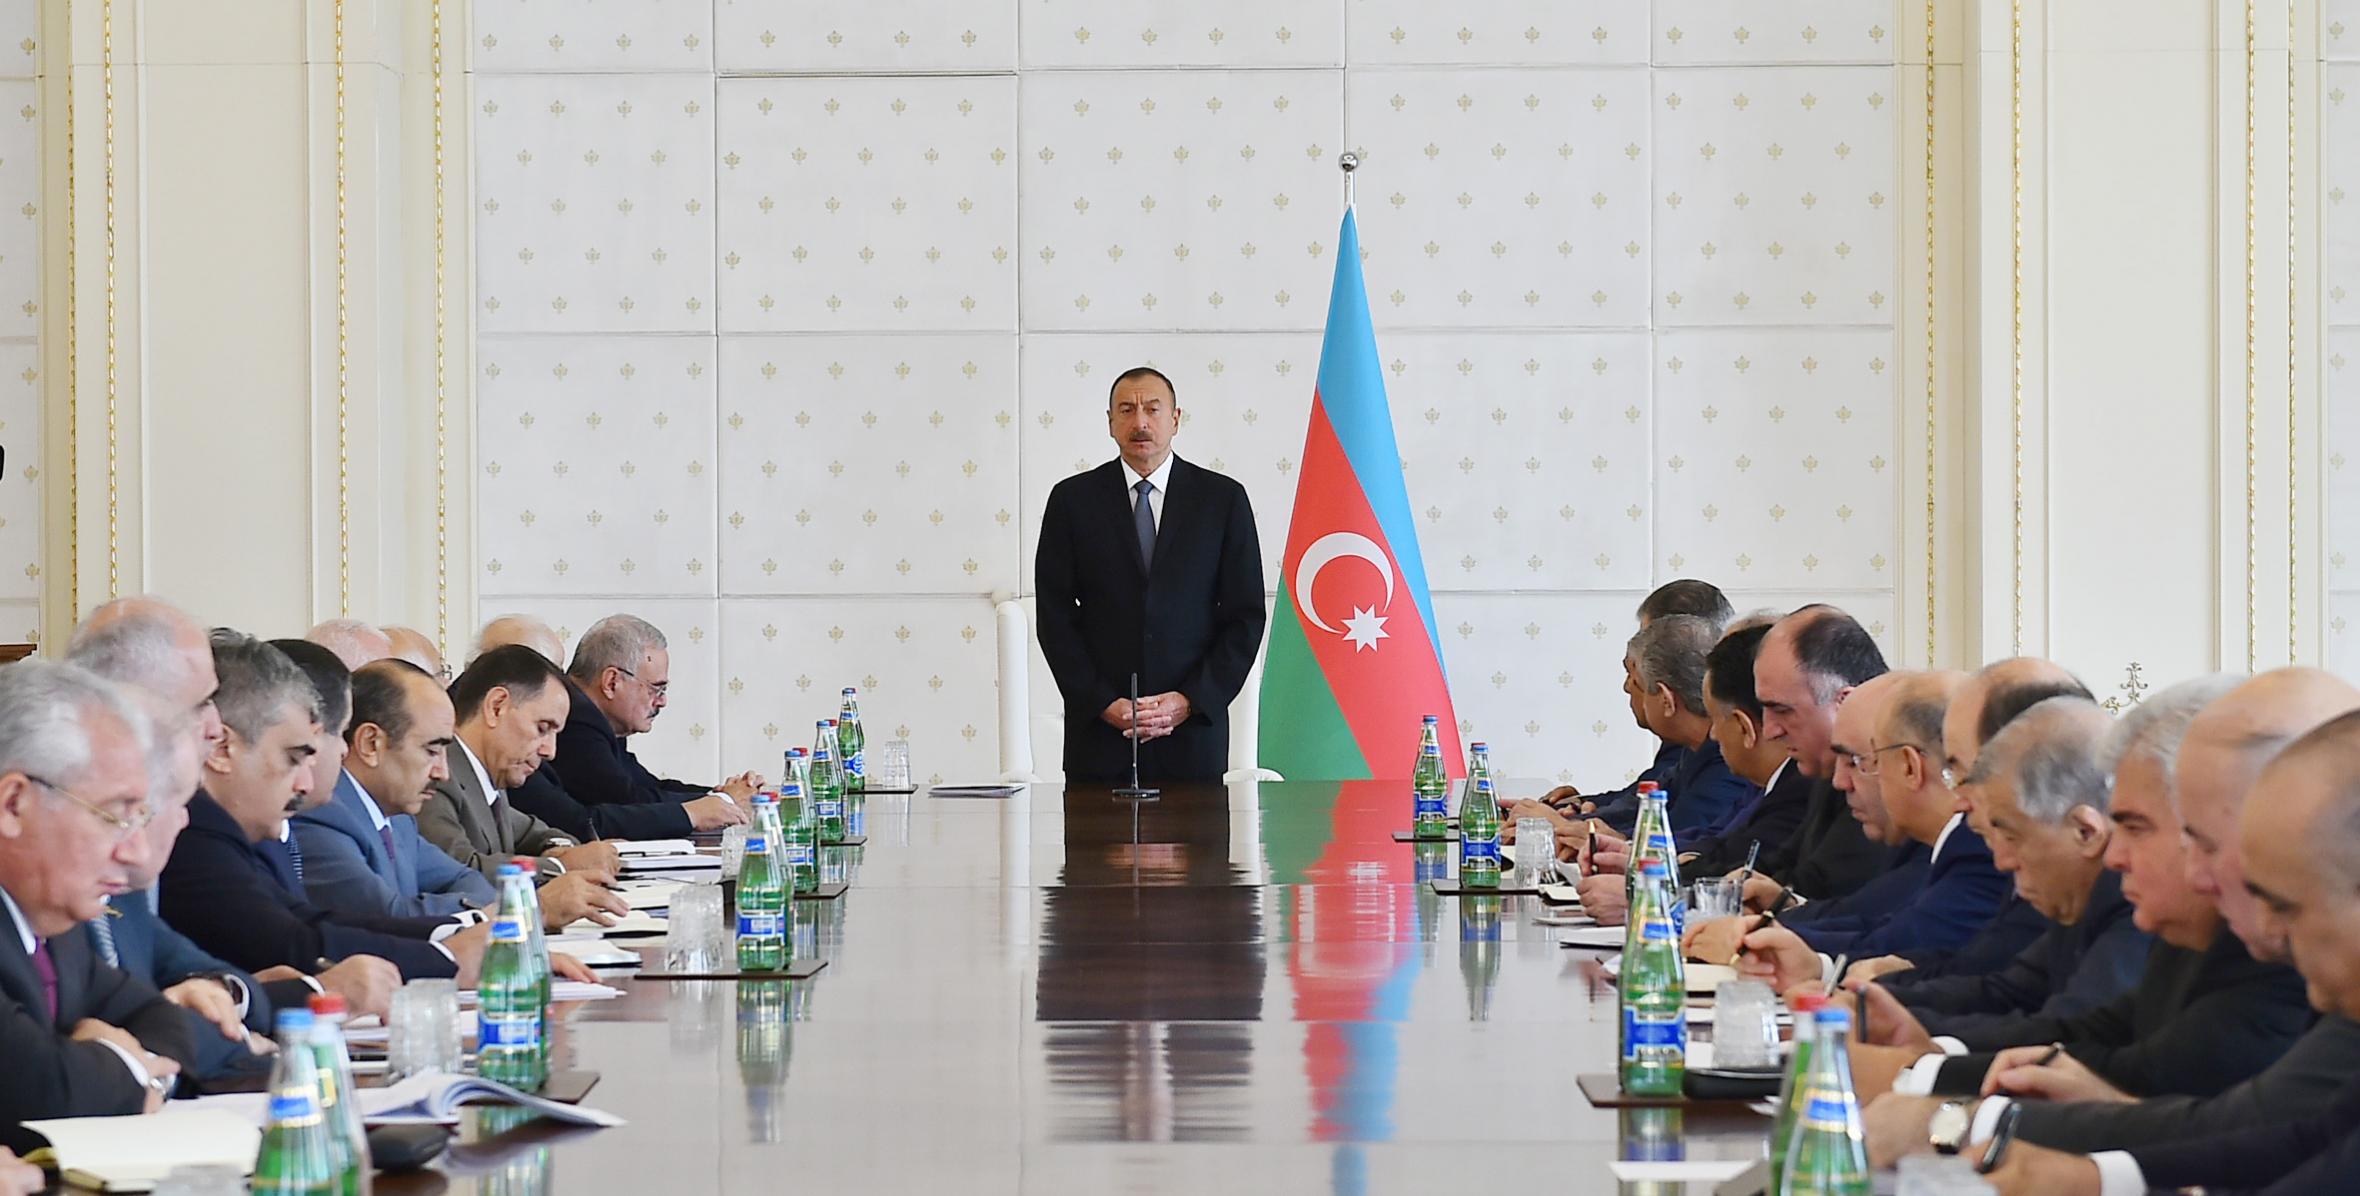 Под председательством Ильхама Алиева состоялось заседание Кабинета Министров, посвященное итогам социально-экономического развития в первой половине 2016 года и предстоящим задачам